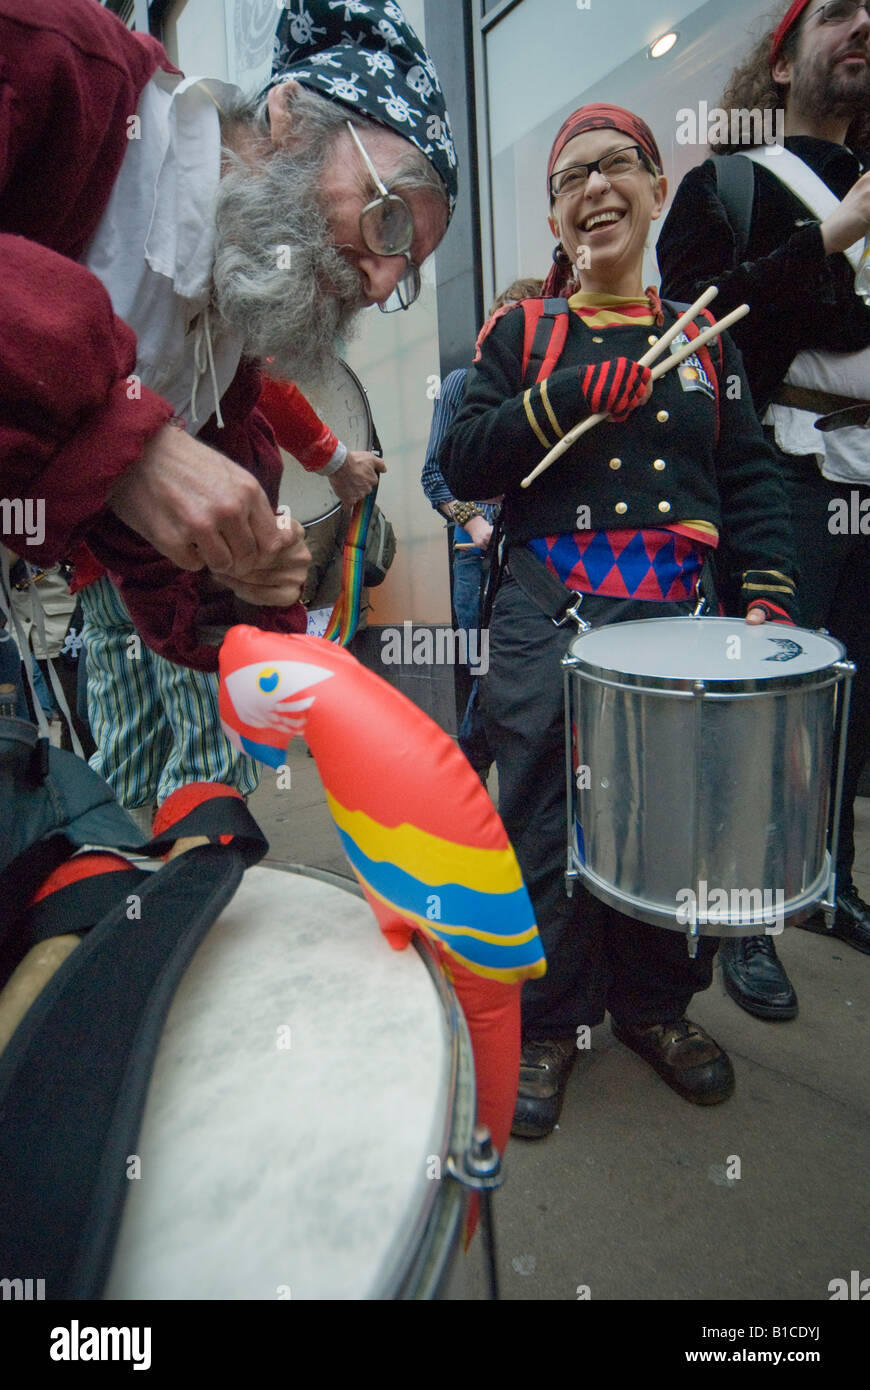 Hände weg von irakischen Öl Untergebene Action Tour durch London - Samba-Trommler, Piraten und Papageien Stockfoto